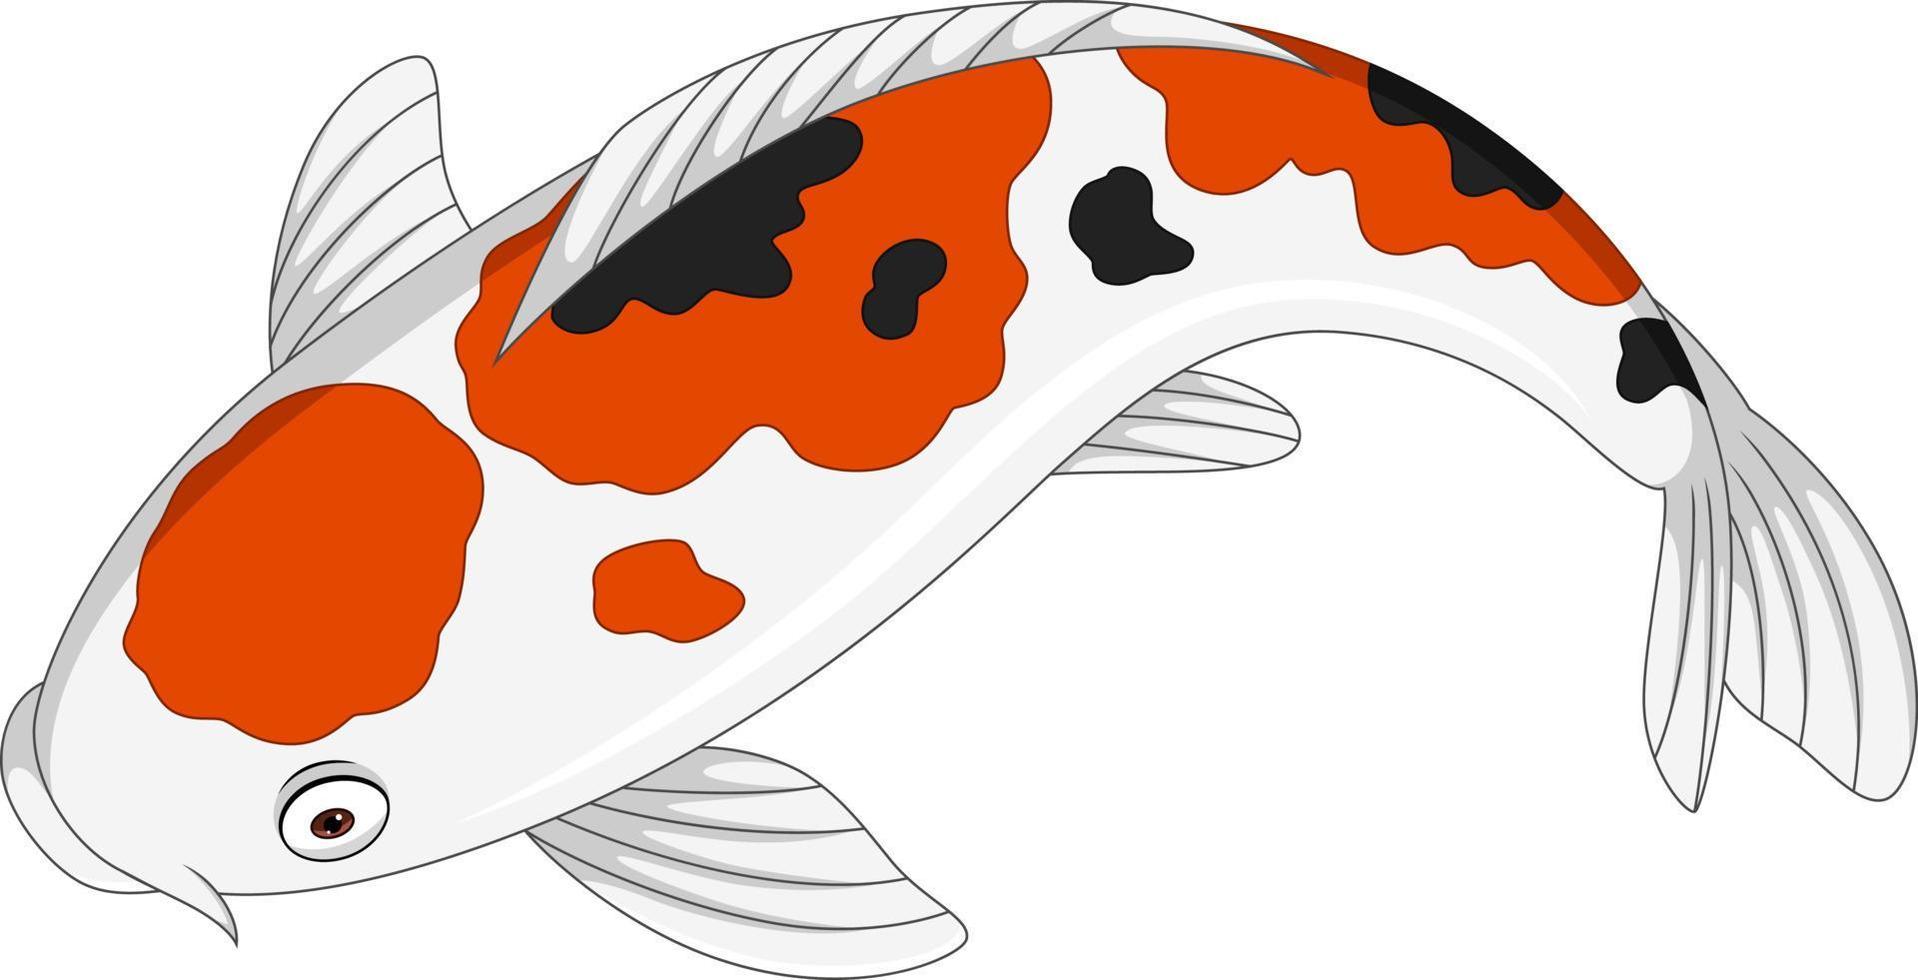 dibujos animados lindo pez koi sobre fondo blanco vector